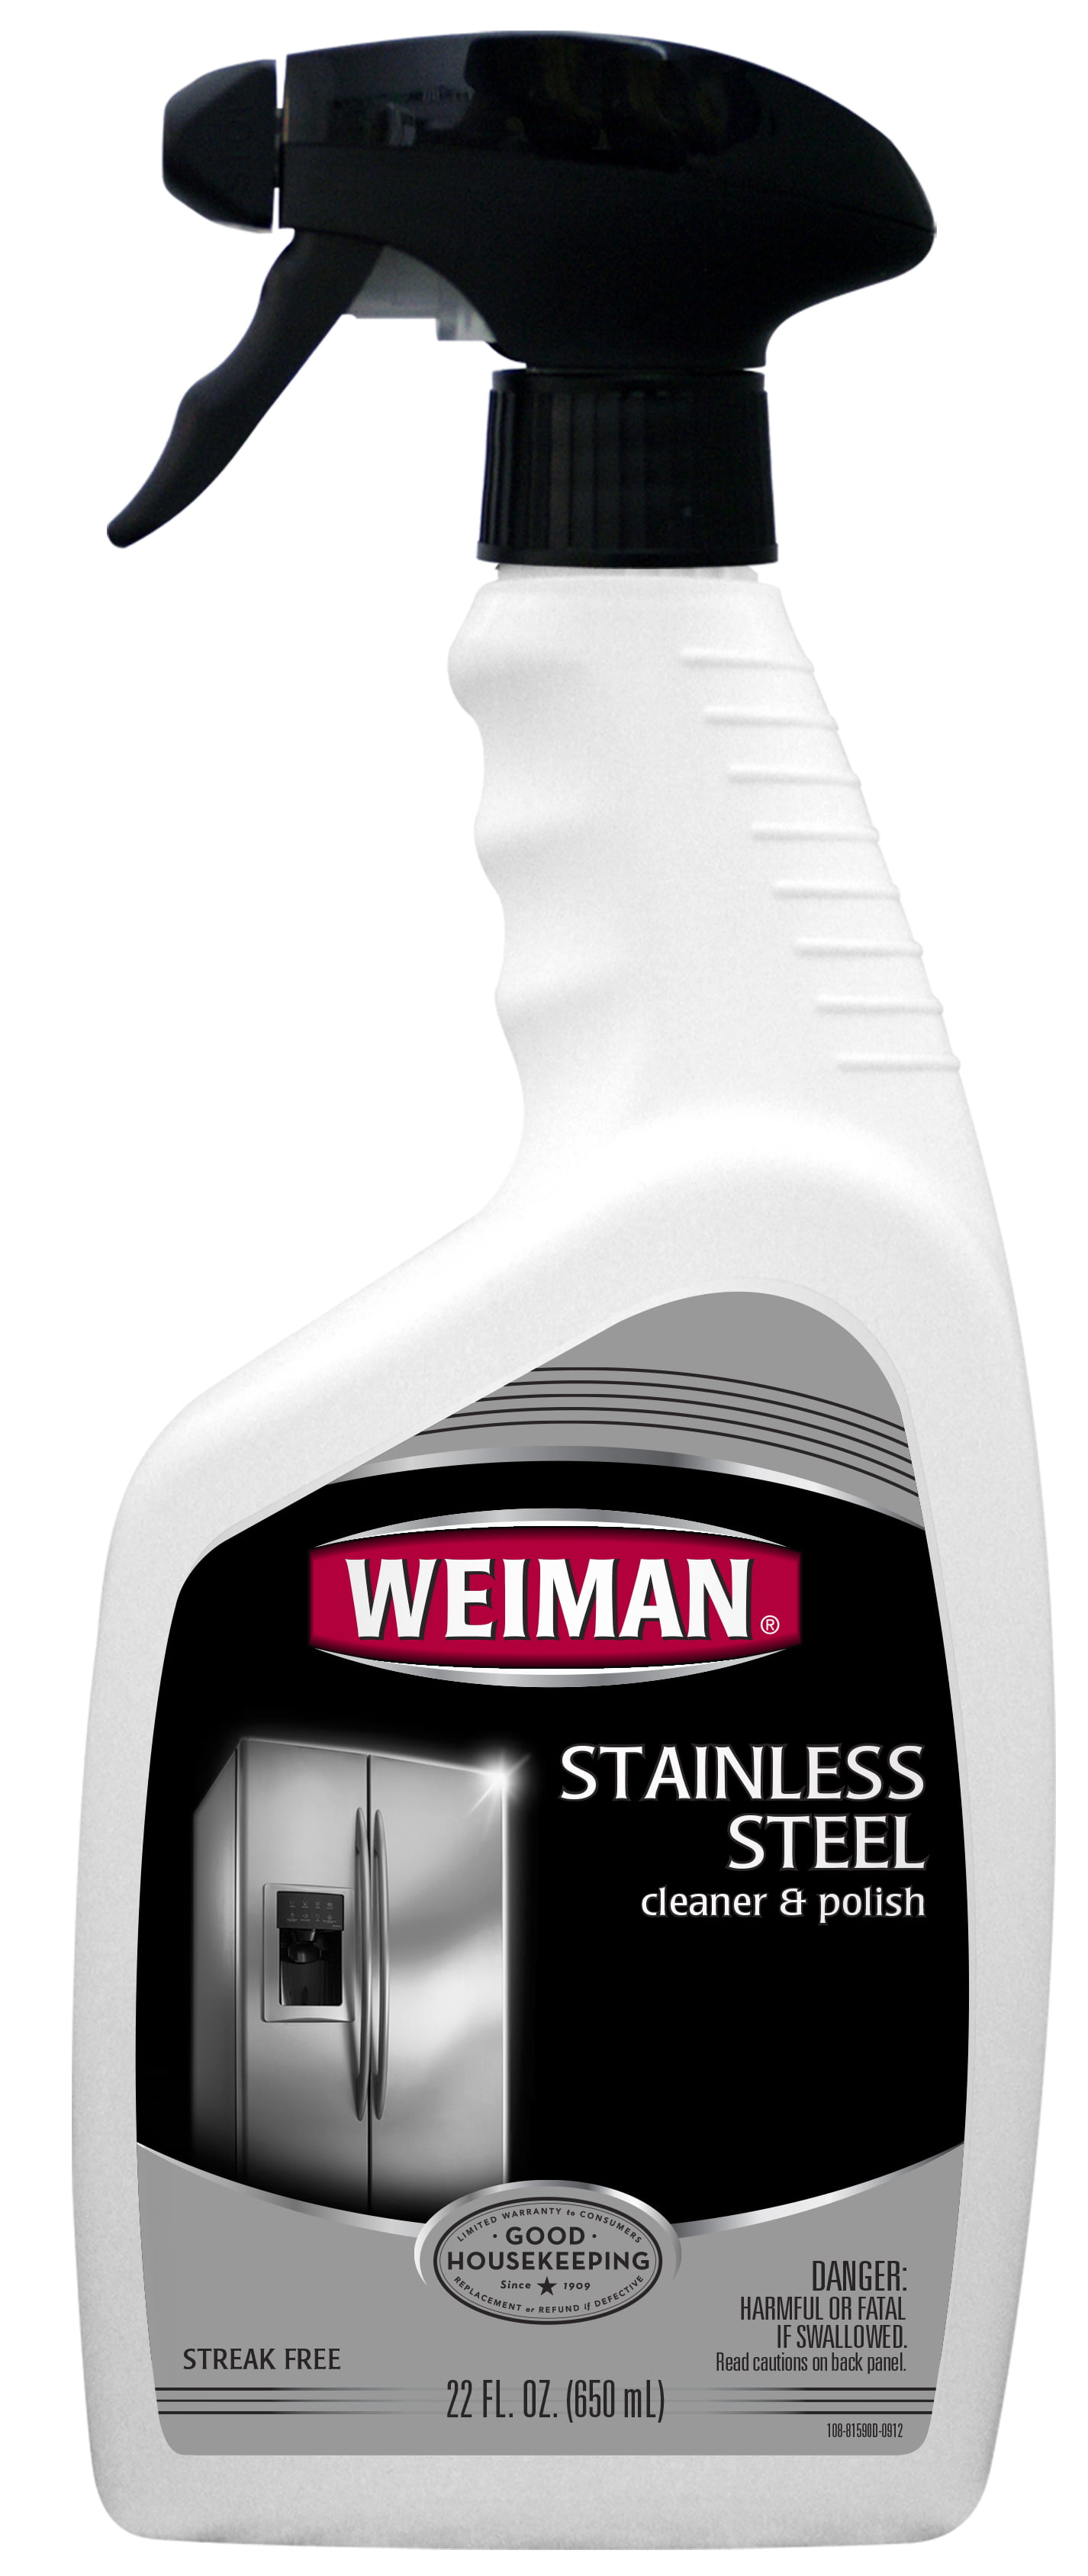 Weiman Stainless Steel Cleaner & Polish, 22 Oz - Walmart.com - Walmart.com Weiman Stainless Steel Cleaner Walmart